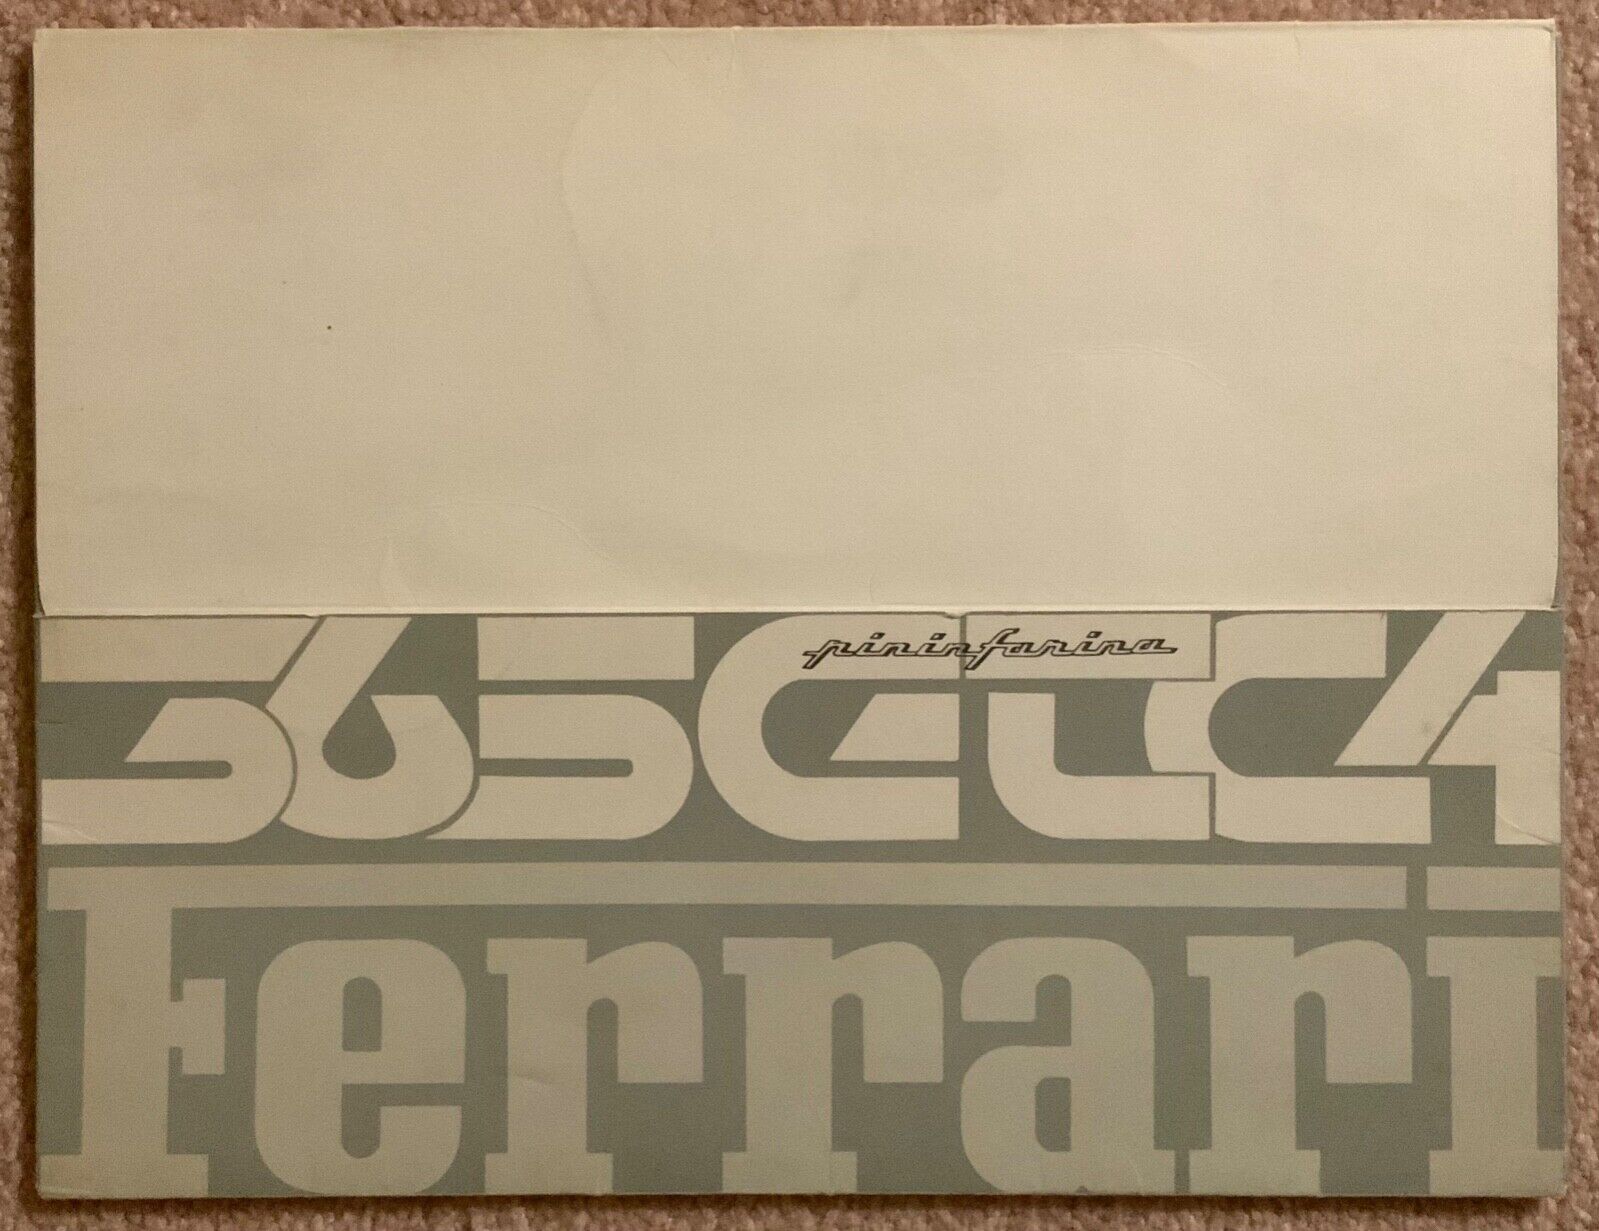 Ferrari 365 GTC/4 Press Kit manual; 50/71, factory original brochure. 